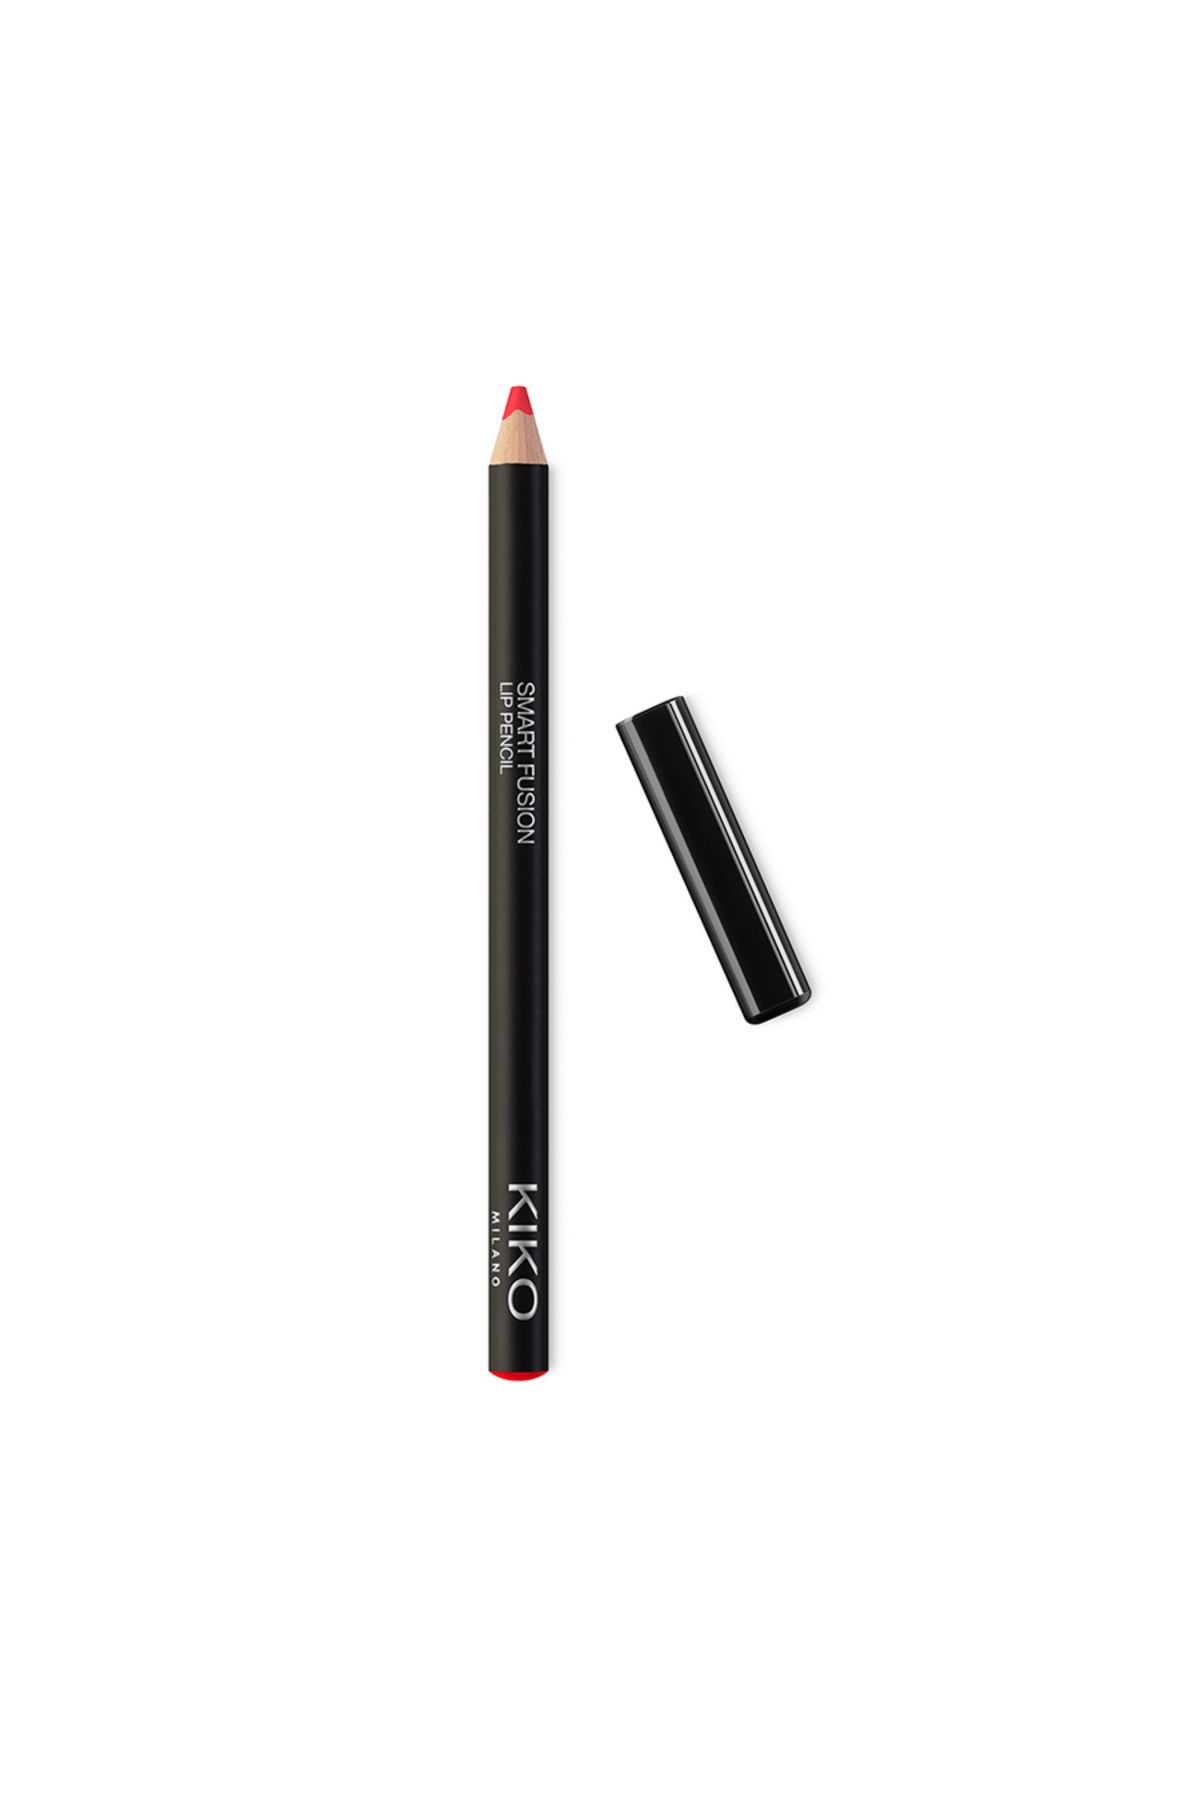 KIKO DUDAK KALEMİ - Smart Fusion Lip Pencil - 524 Peony Violet